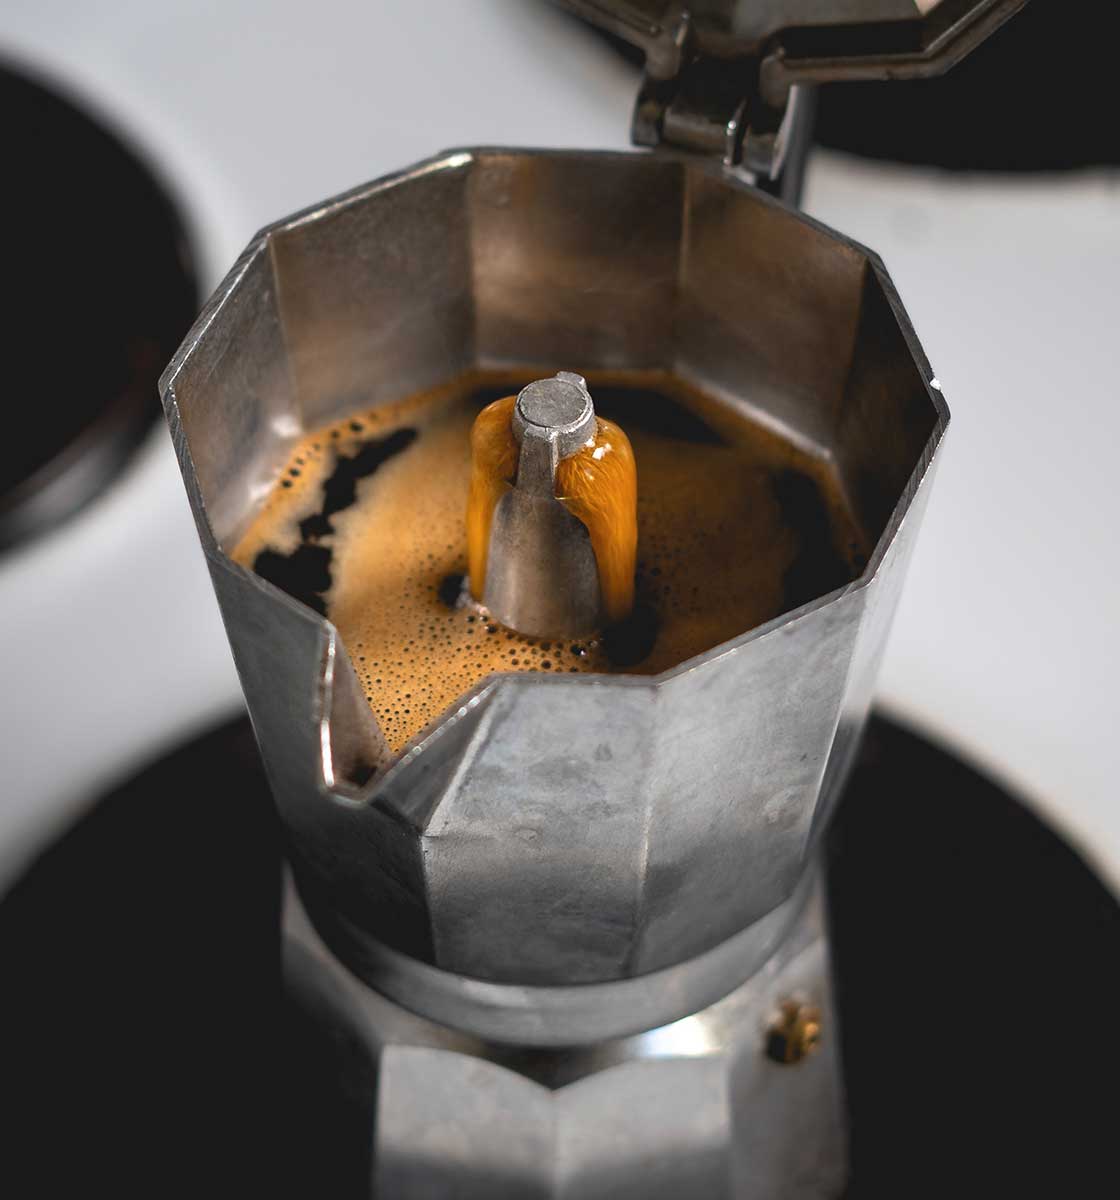 ocak üzerinde kahve demlenen kapağı açık bir moka pot'un üst açıdan çekilmiş görseli.